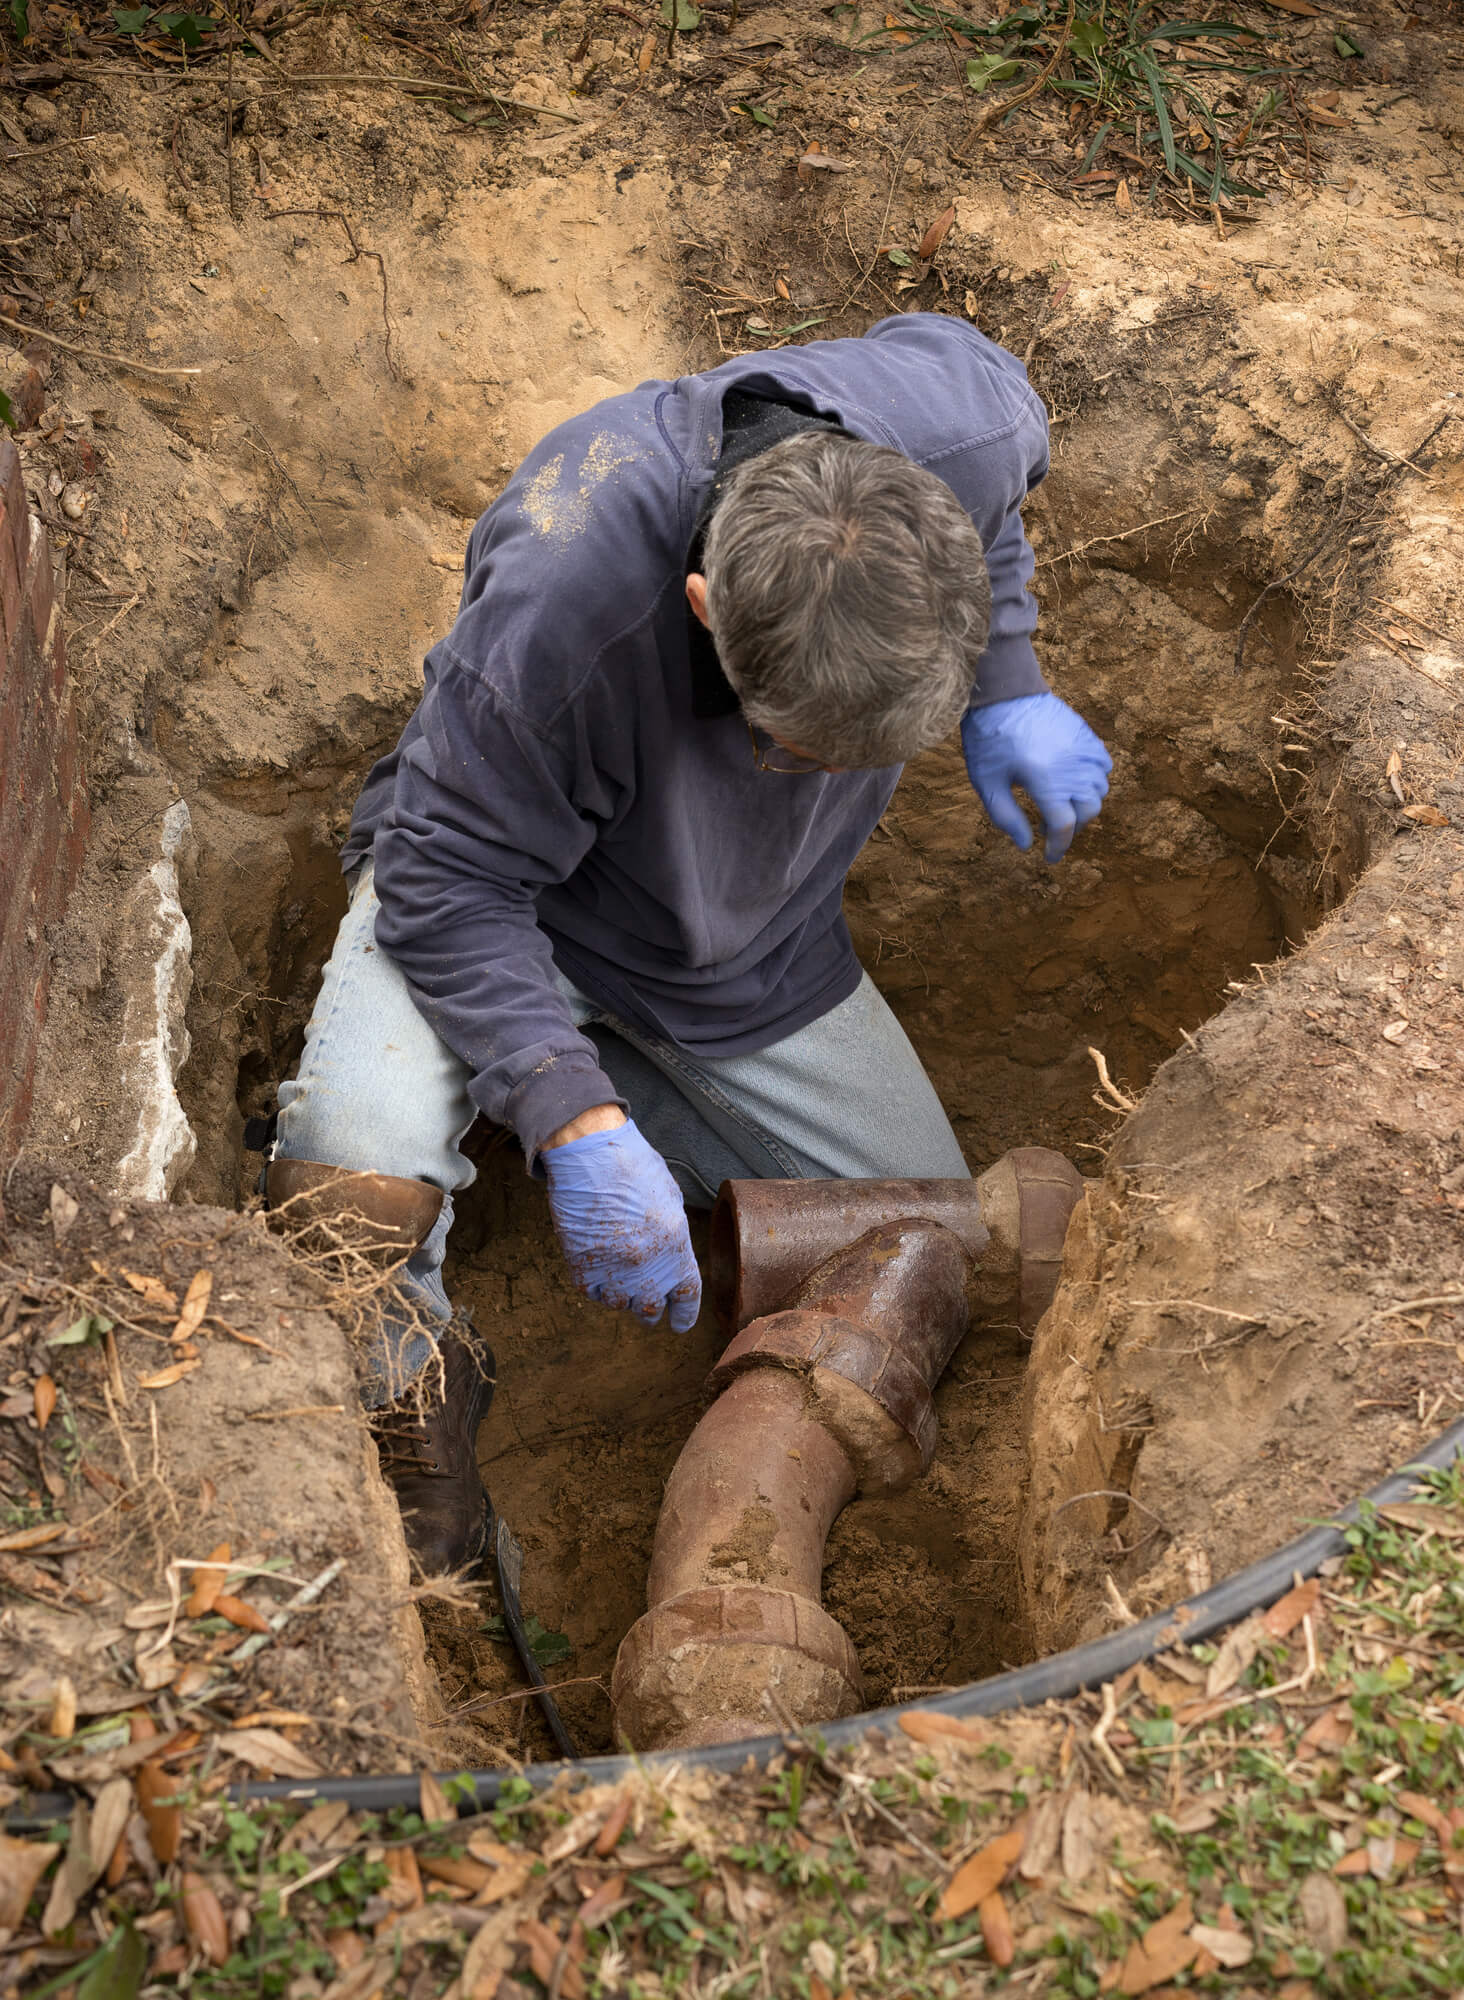 plombier inspectant les tuyaux excavés